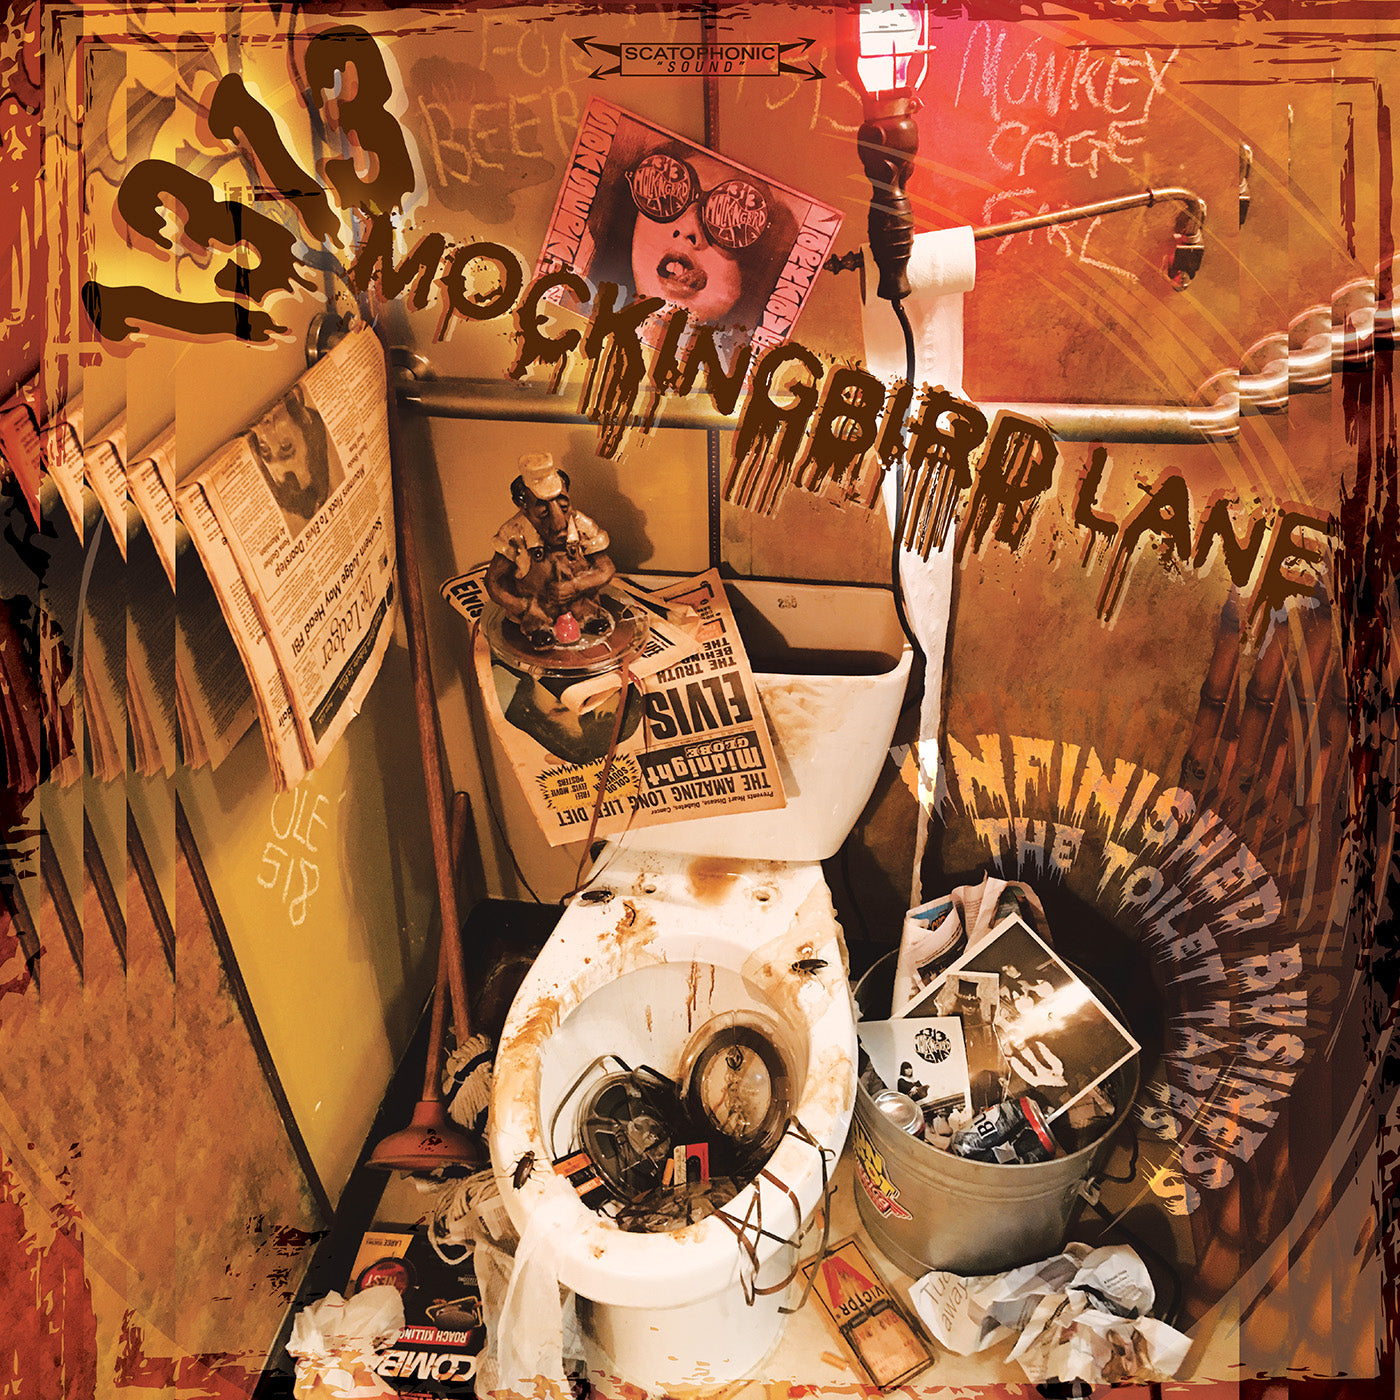 1313 Mockingbird Lane - Unfinished Business (The Toilet Tapes) - Ltd. Ed. Toilet Swirl Vinyl & Poster - Vinyl LP